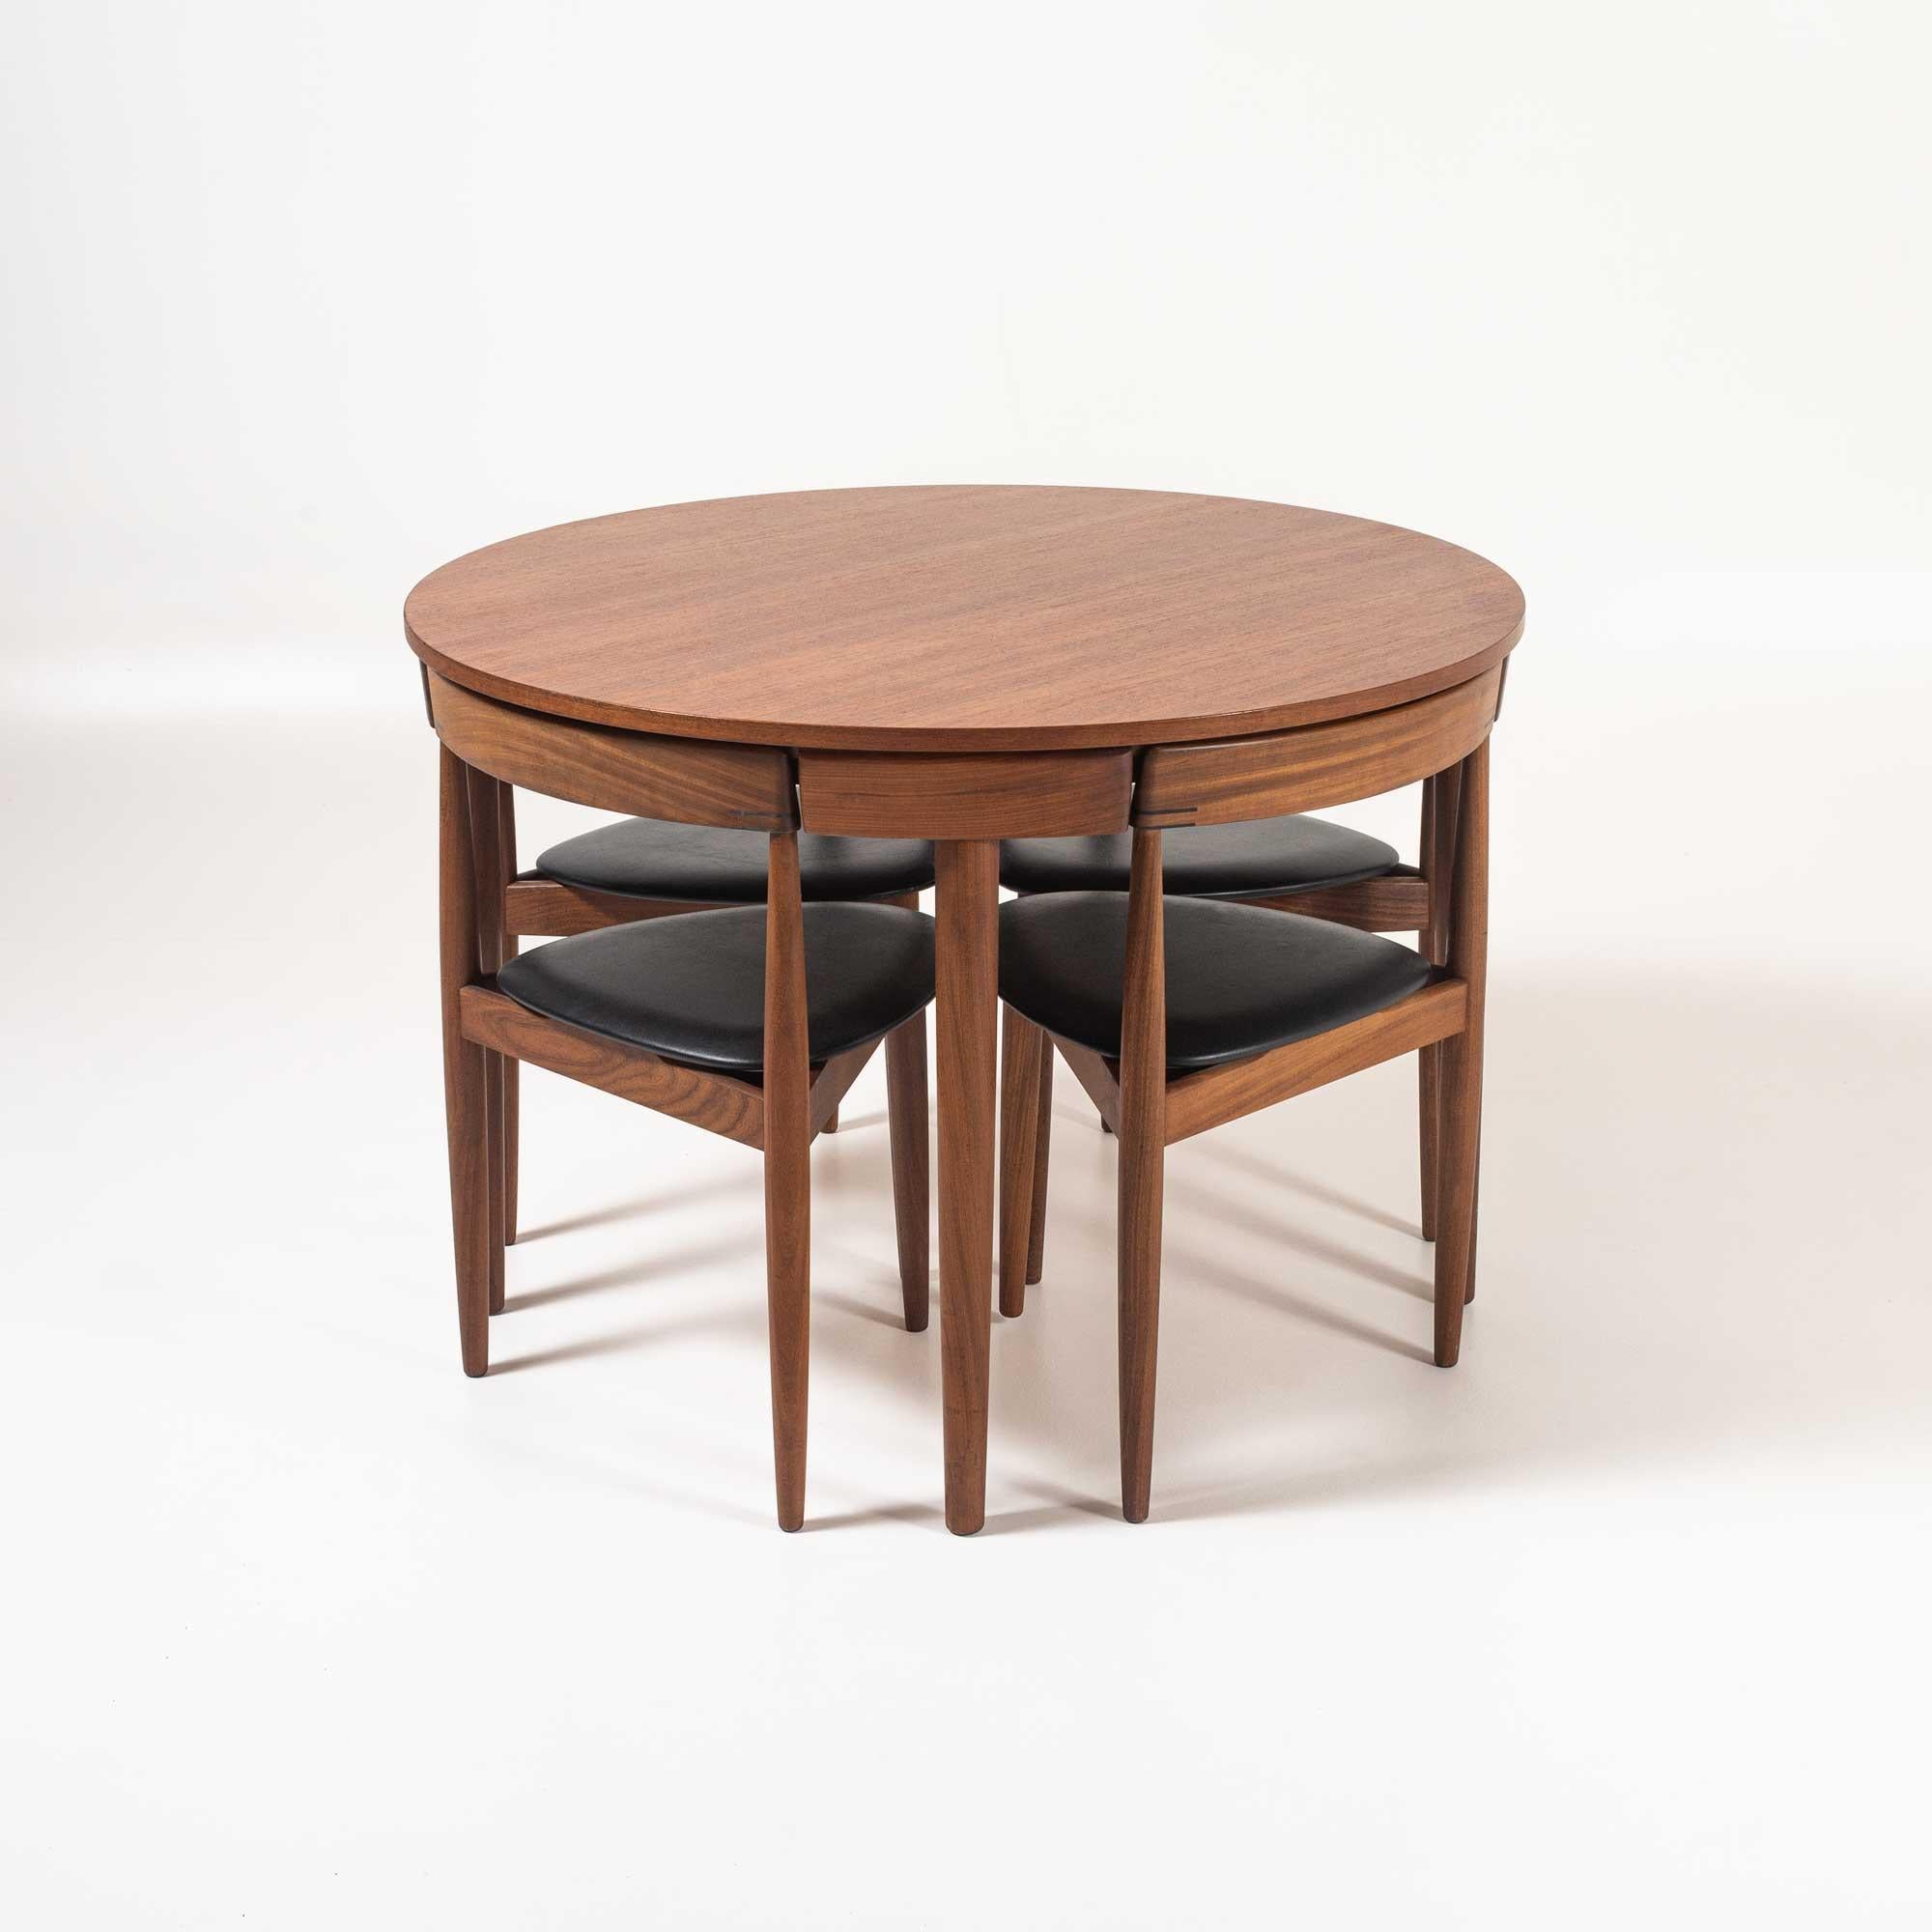 Klassischer dänischer Design-Esstisch von Hans Olsen für Frem Rojle, Dänemark 1952. Vier dreibeinige Stühle sind so konzipiert, dass sie direkt unter dem Tisch verstaut werden können. Aufwändige Details an der Rückenlehne jedes Stuhls. Der Tisch und